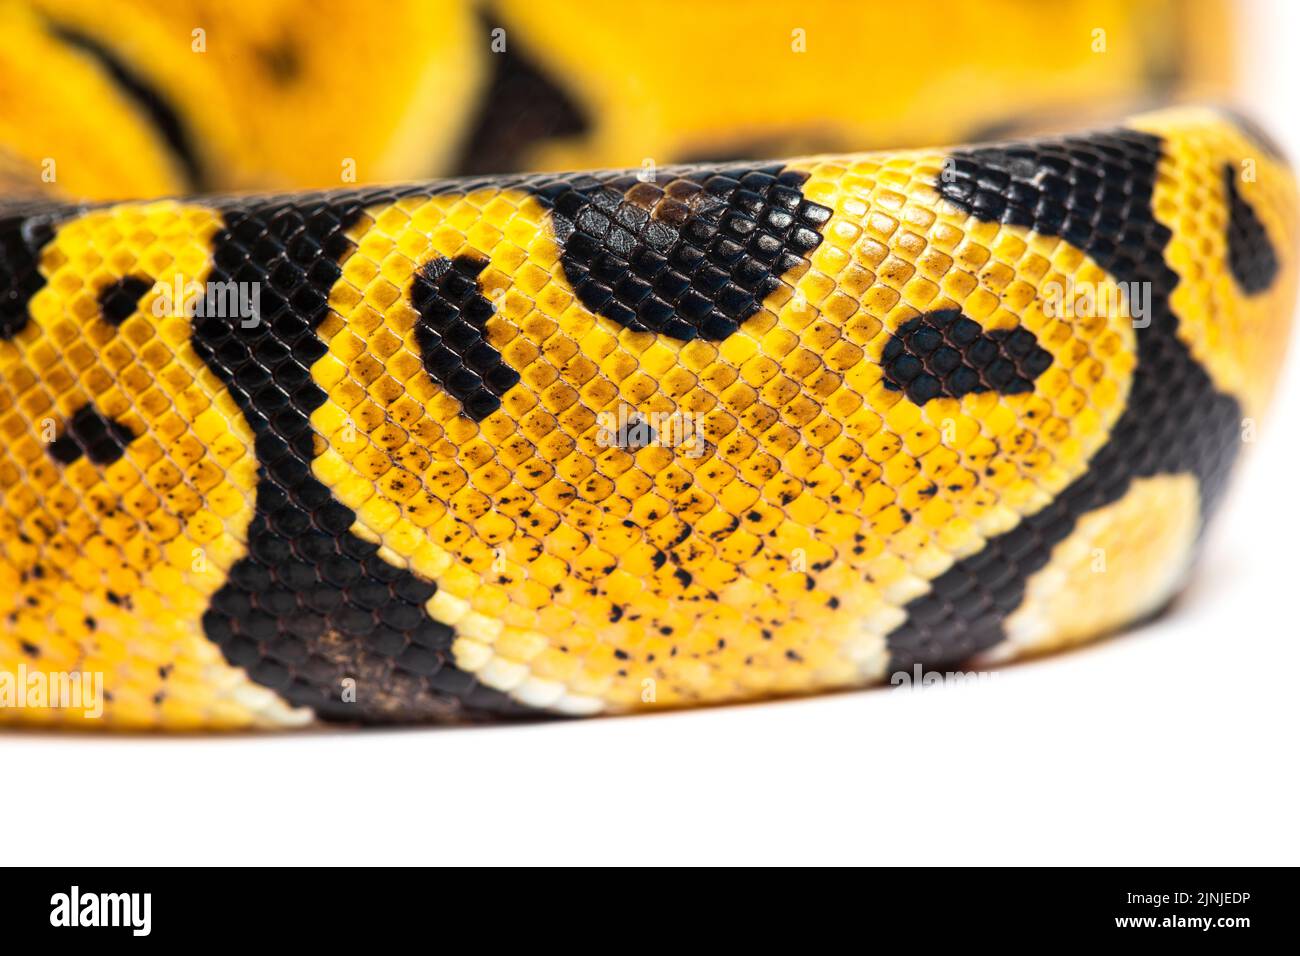 Detail macro of a Pastel ball python scales, Python Regius, isolated on white Stock Photo